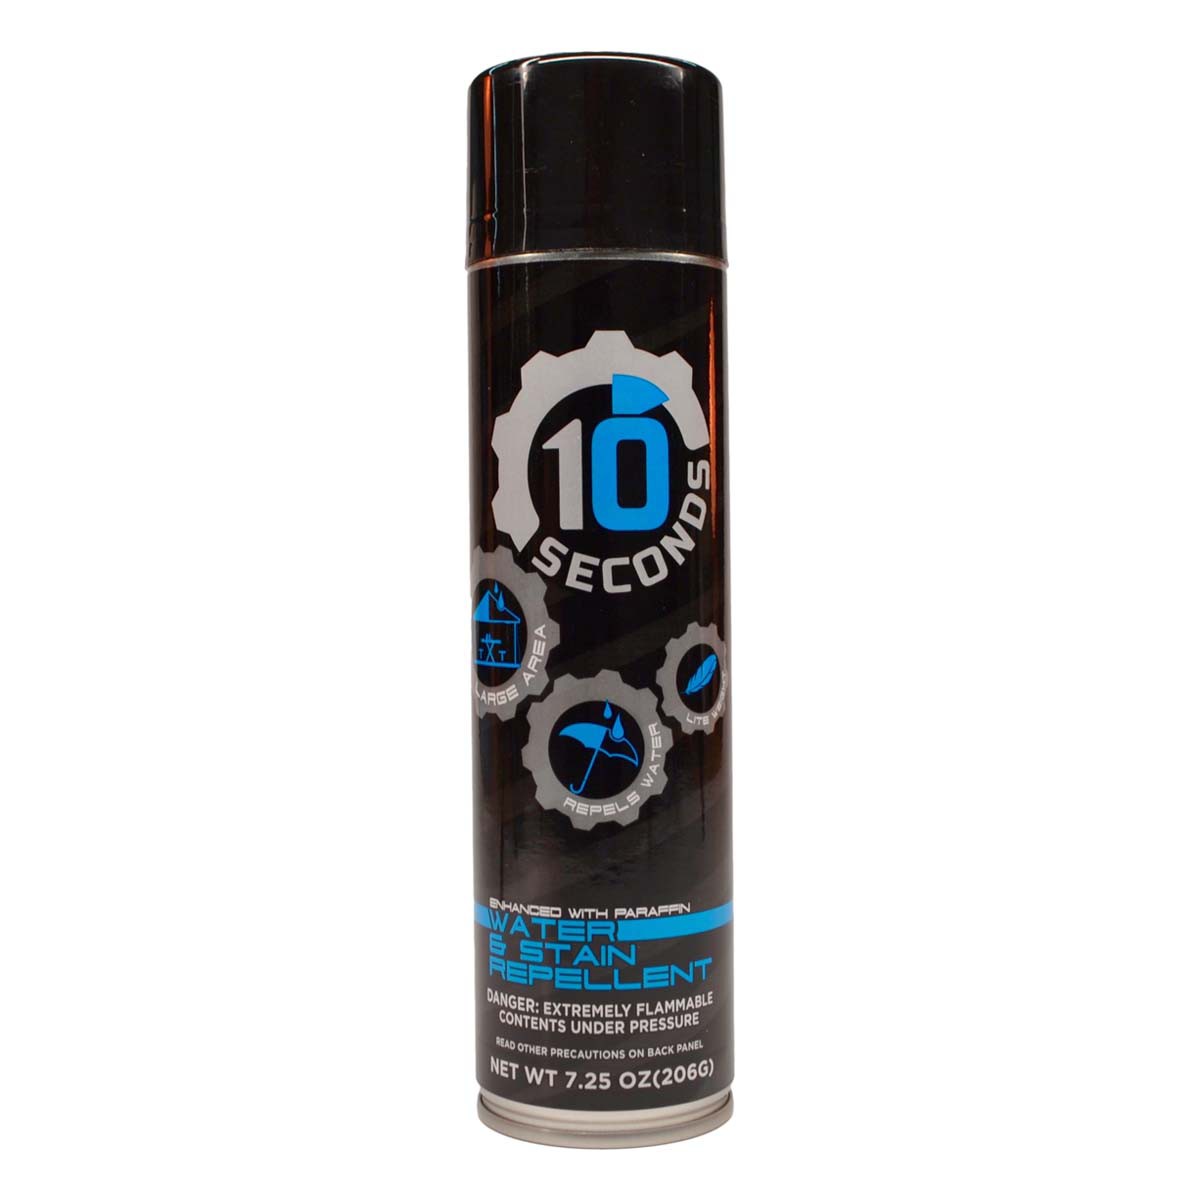 10 Seconds Water Repellent Spray